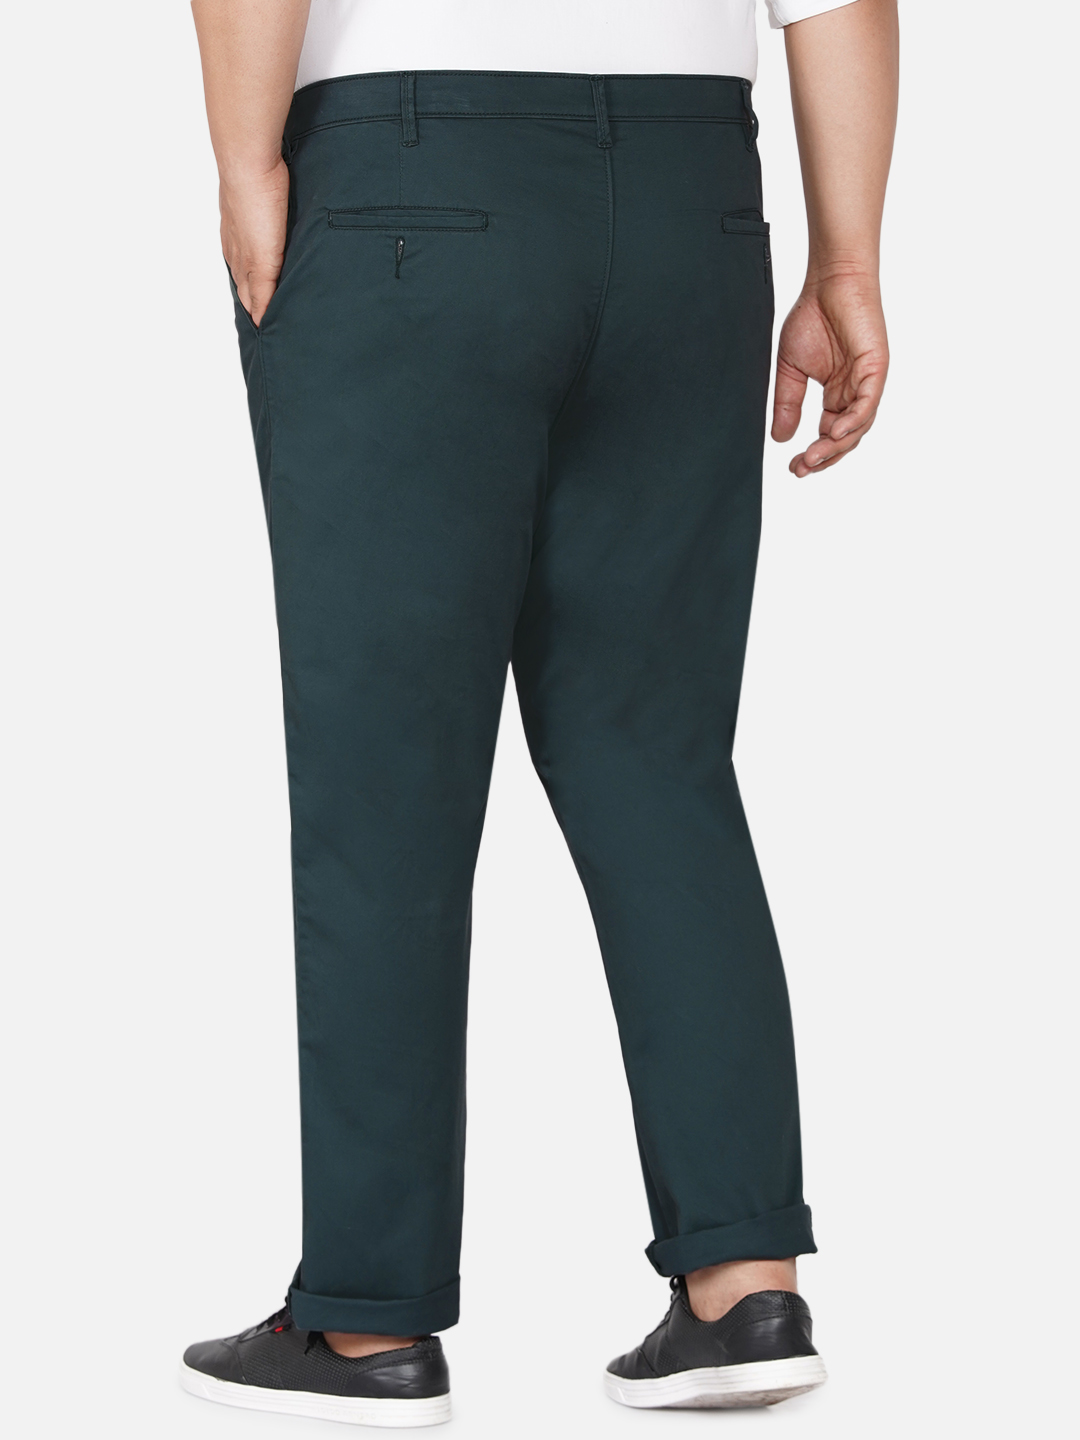 bottomwear/trousers/JPTR2195V/jptr2195v-5.jpg